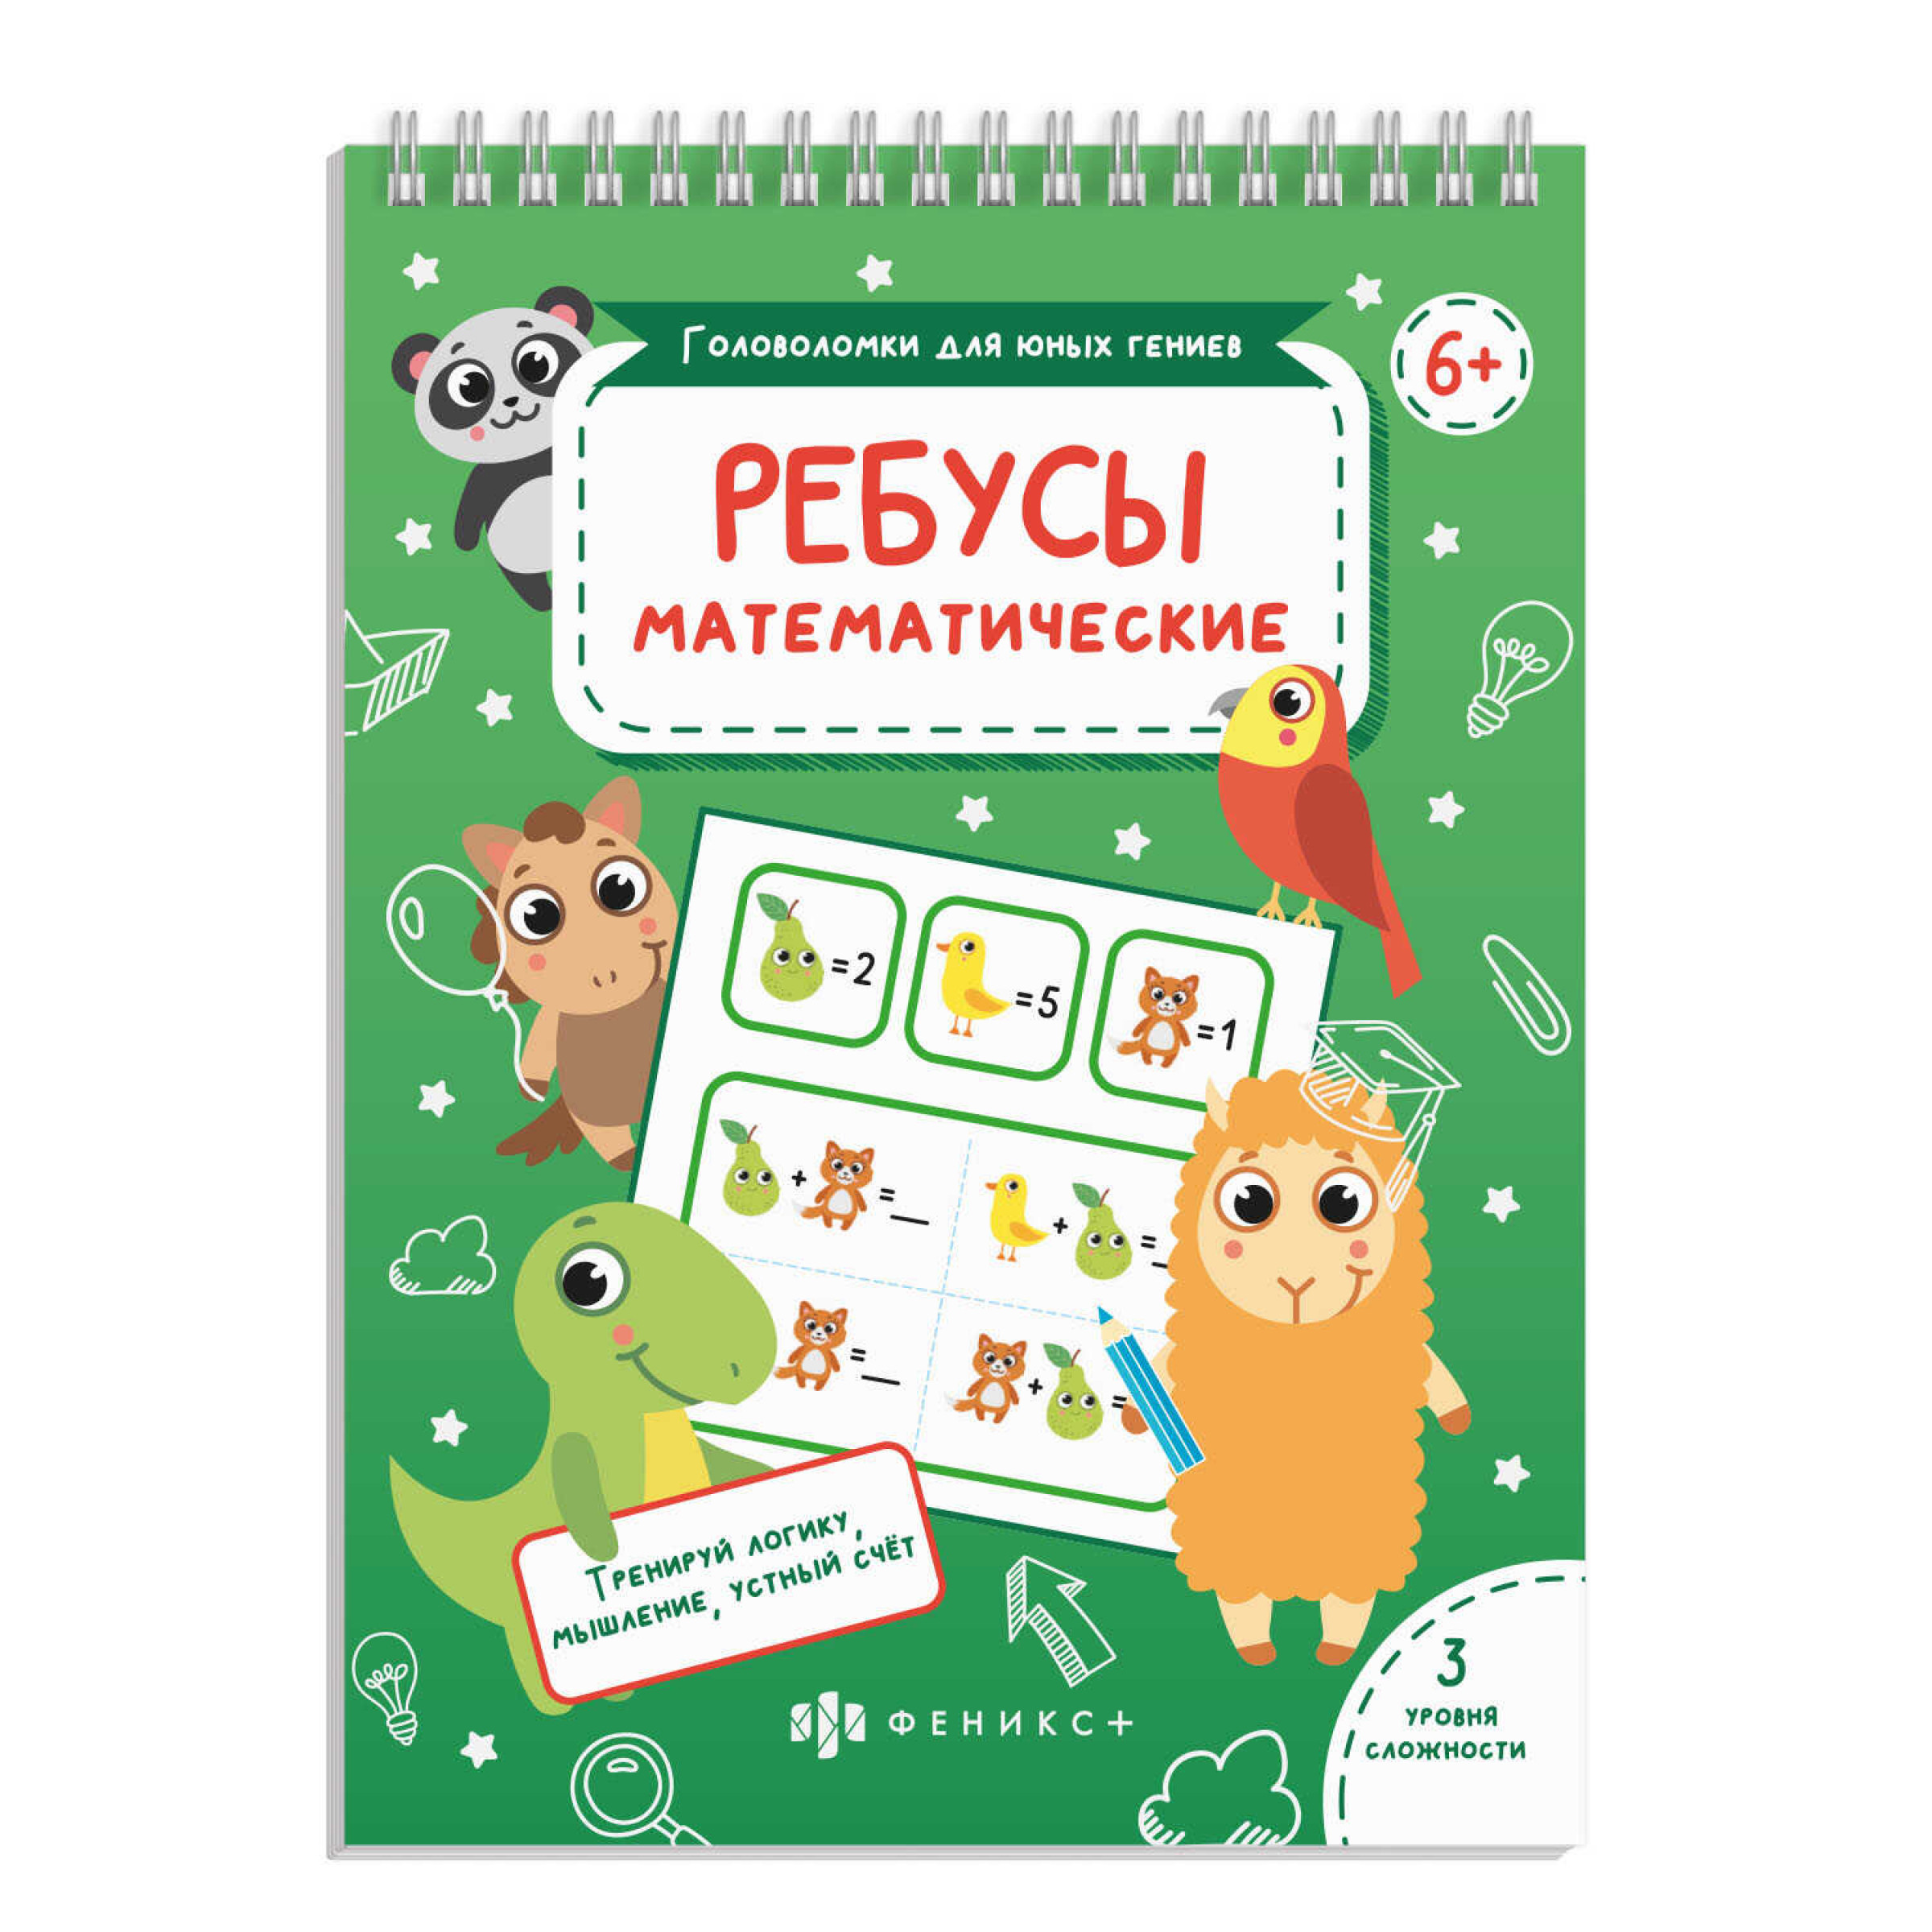 Развивающая книжка-картинка для детей Ребусы математические